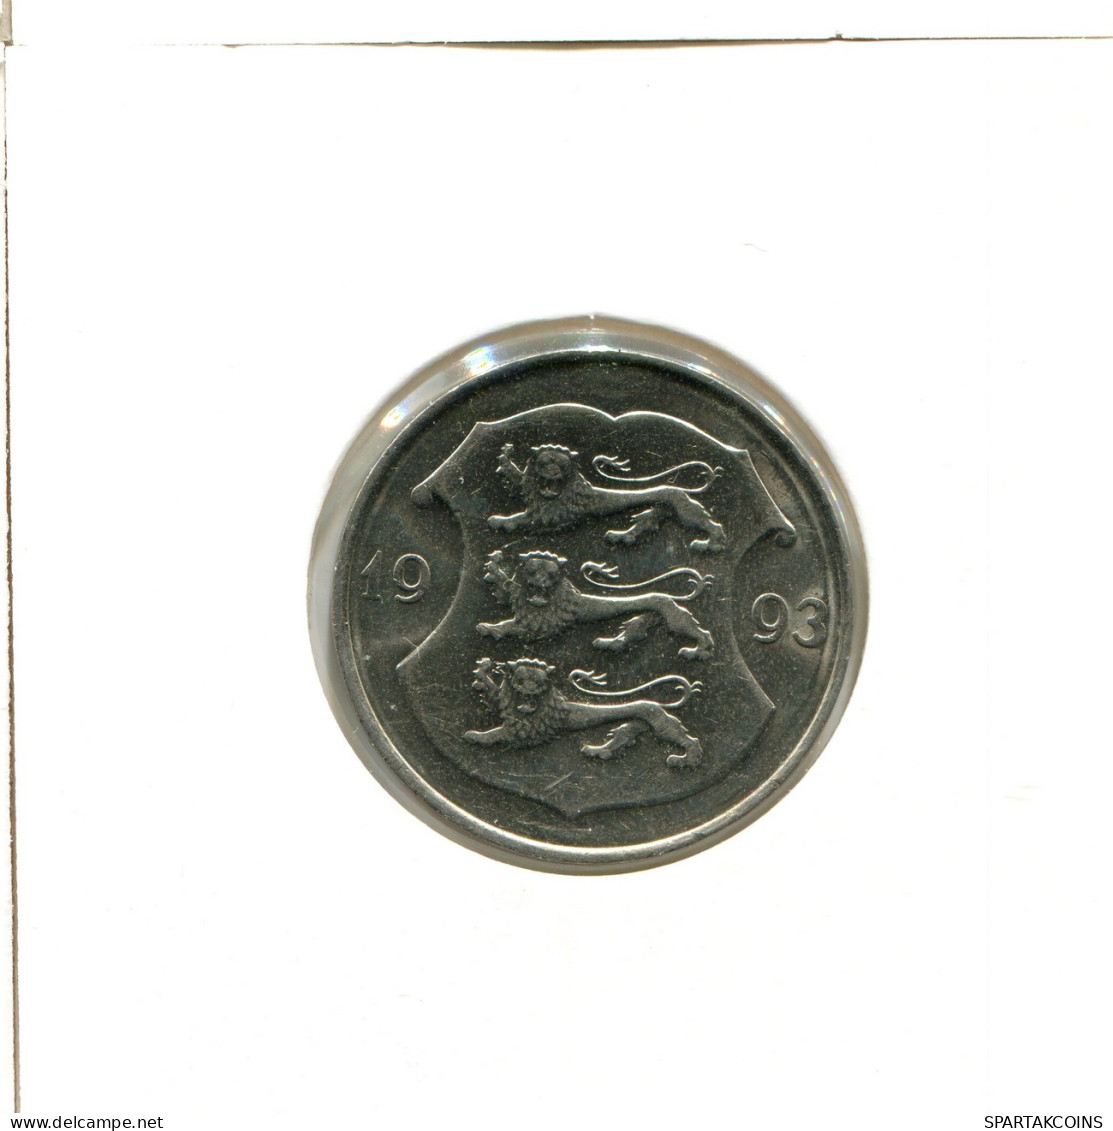 1 KROON 1993 ESTONIA Moneda #AX560.E - Estonia